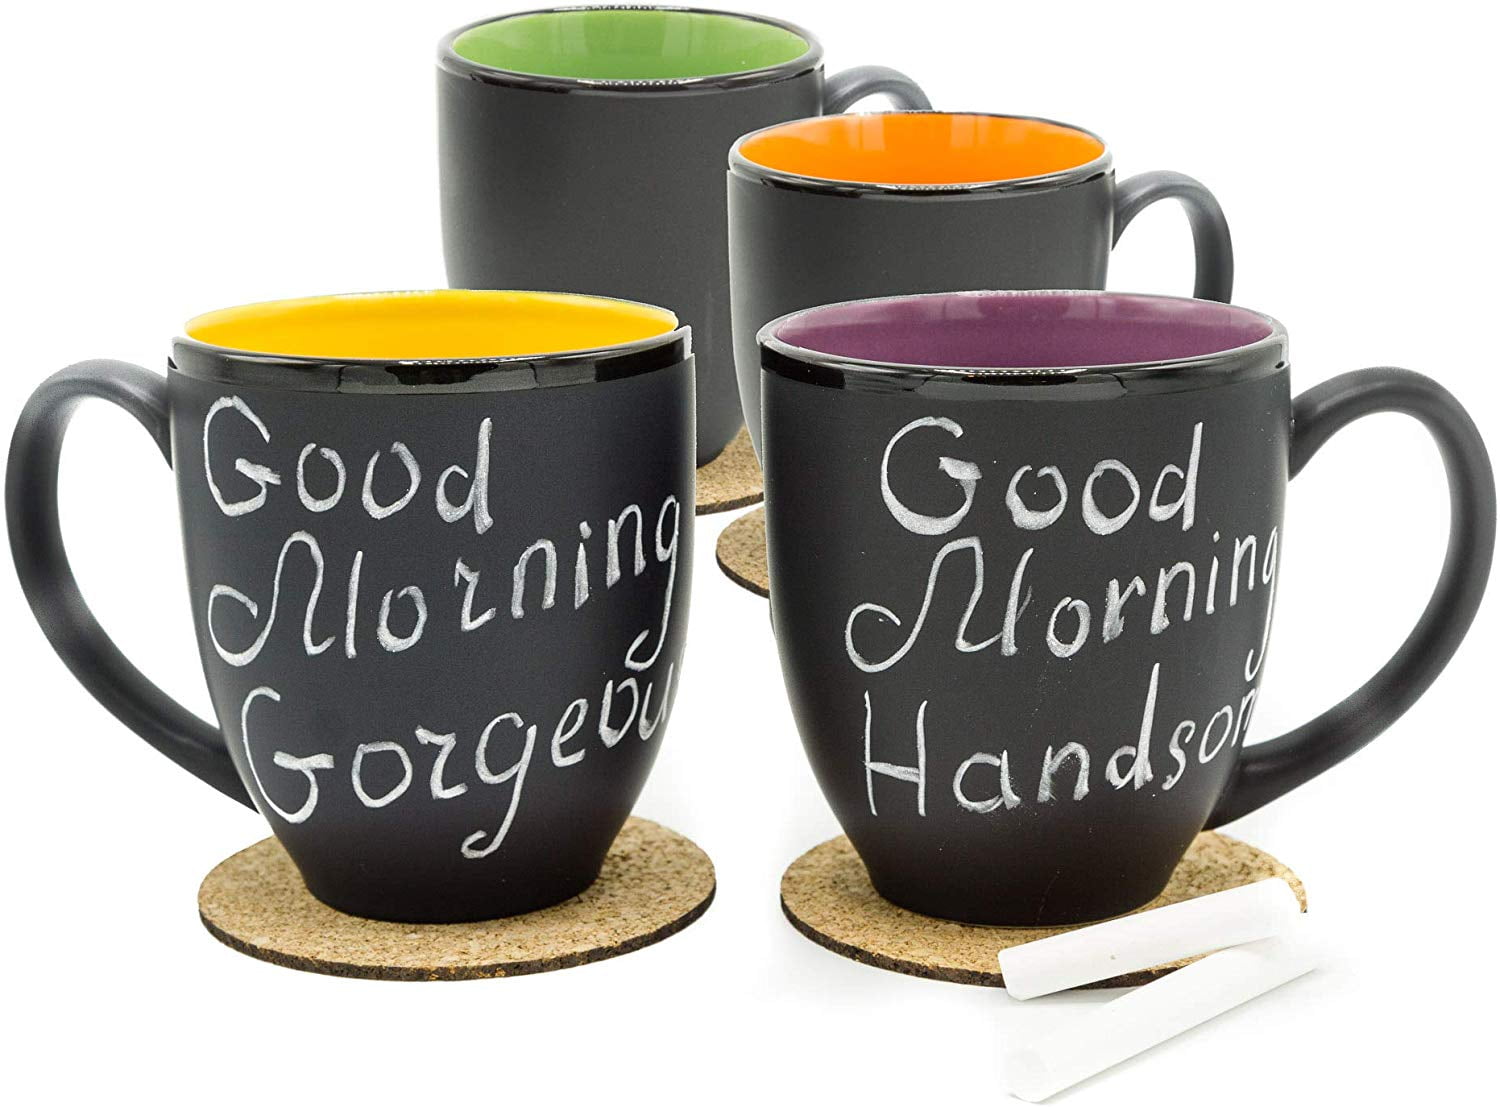 Gaetooely Ceramic Marshmallow Shaped Hot Chocolate Mug Smile Mug Flower Pot 4Pcs/Set